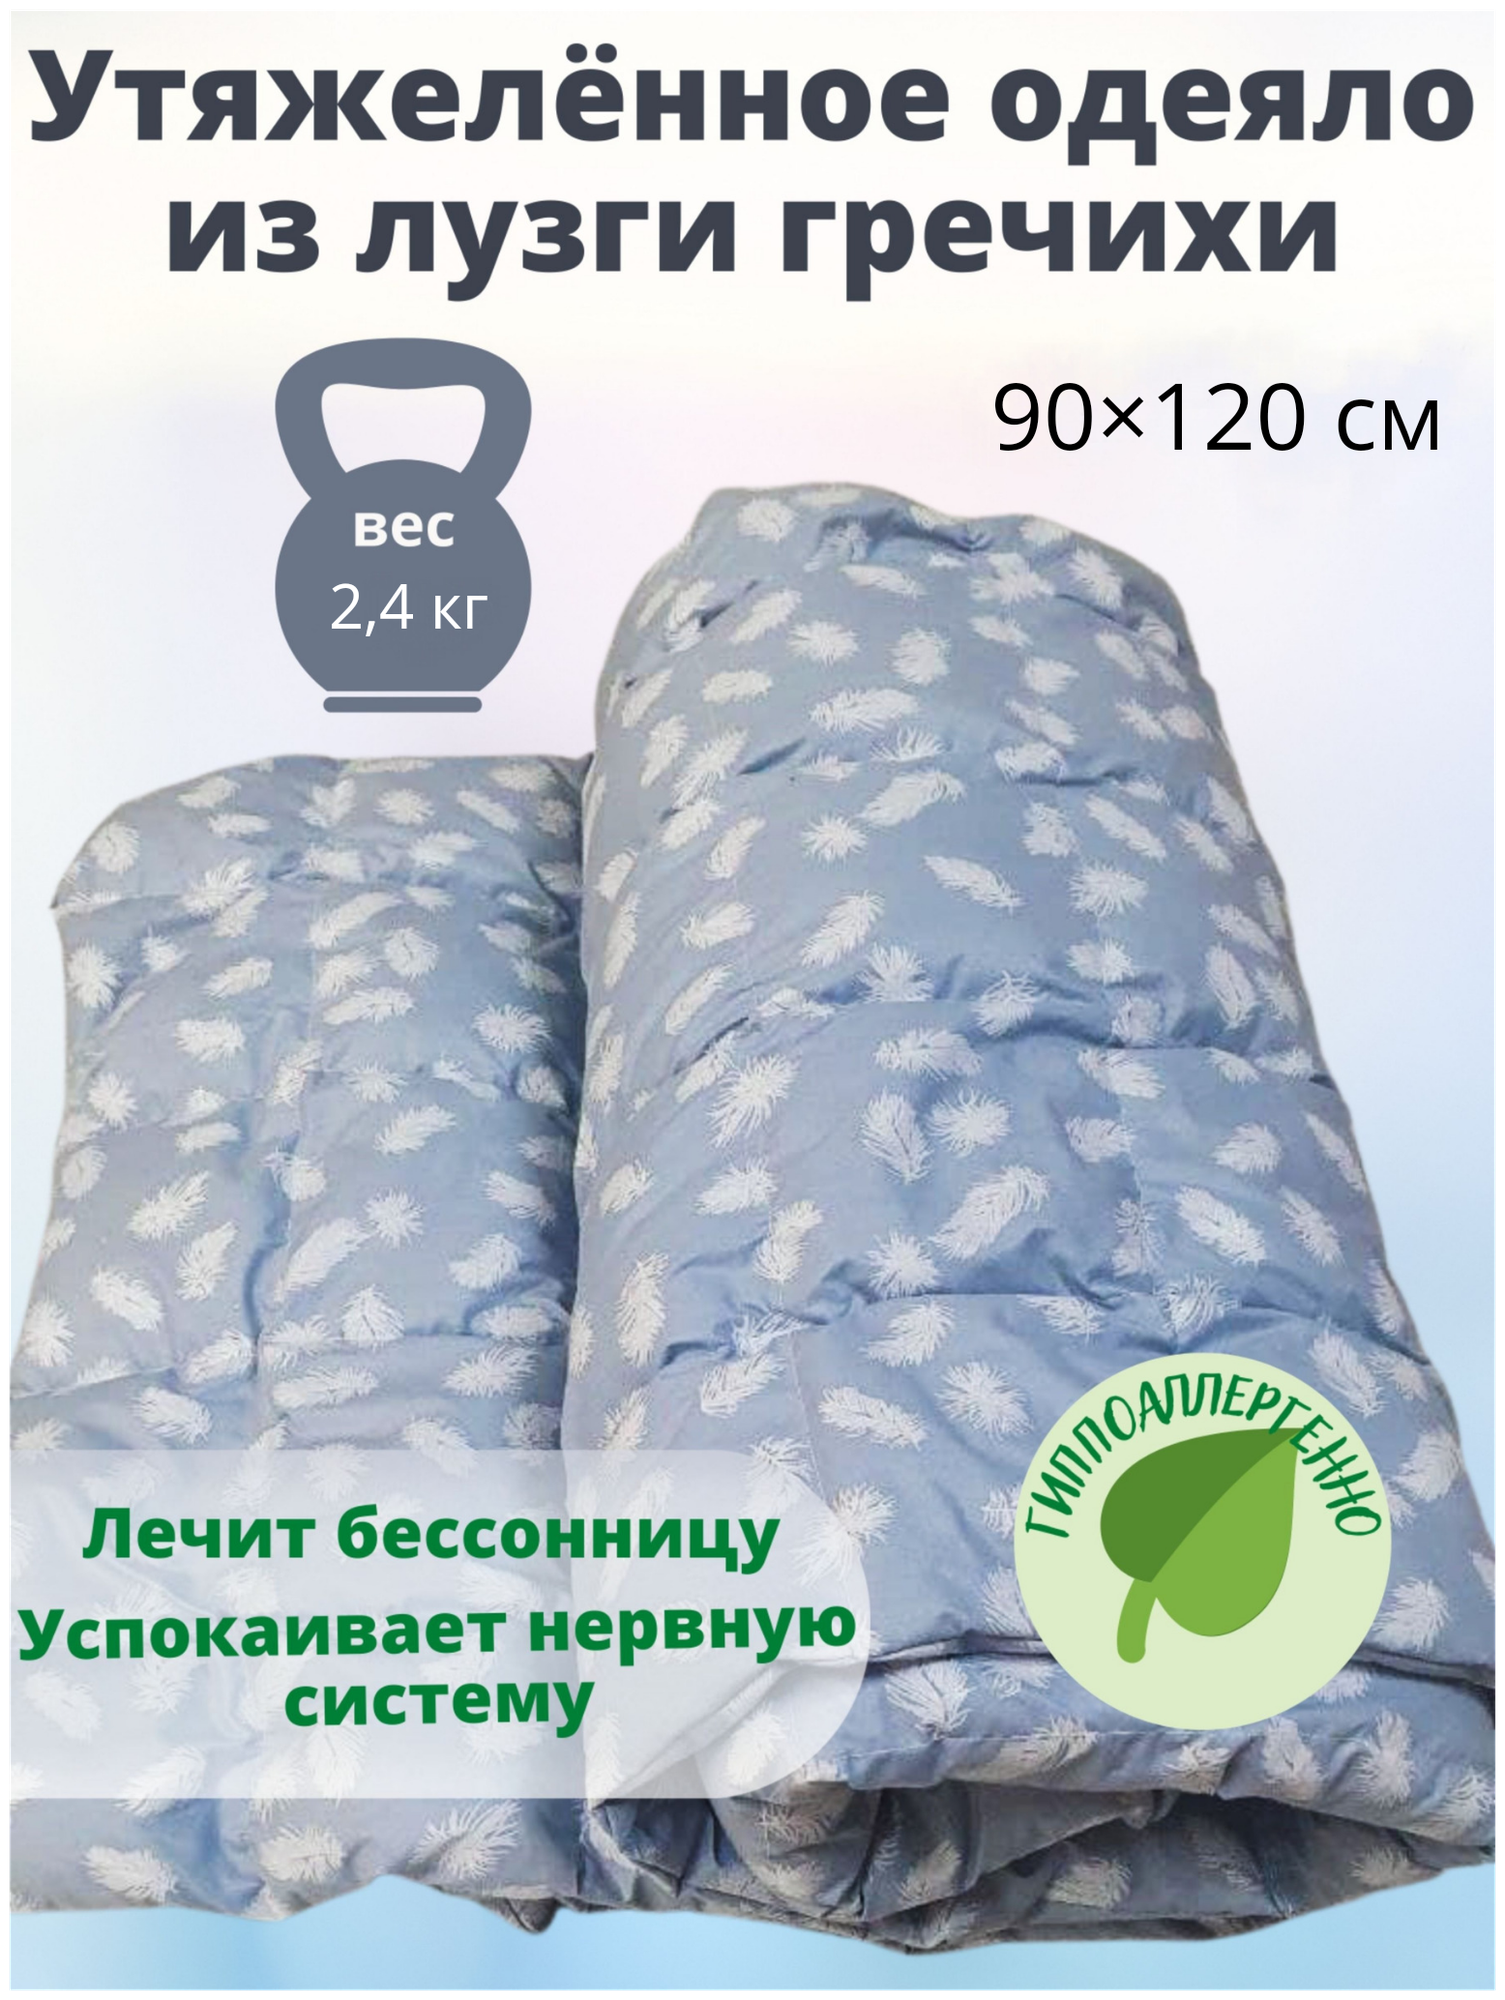 Утяжеленное сенсорное одеяло из лузги гречихи 90*120 см